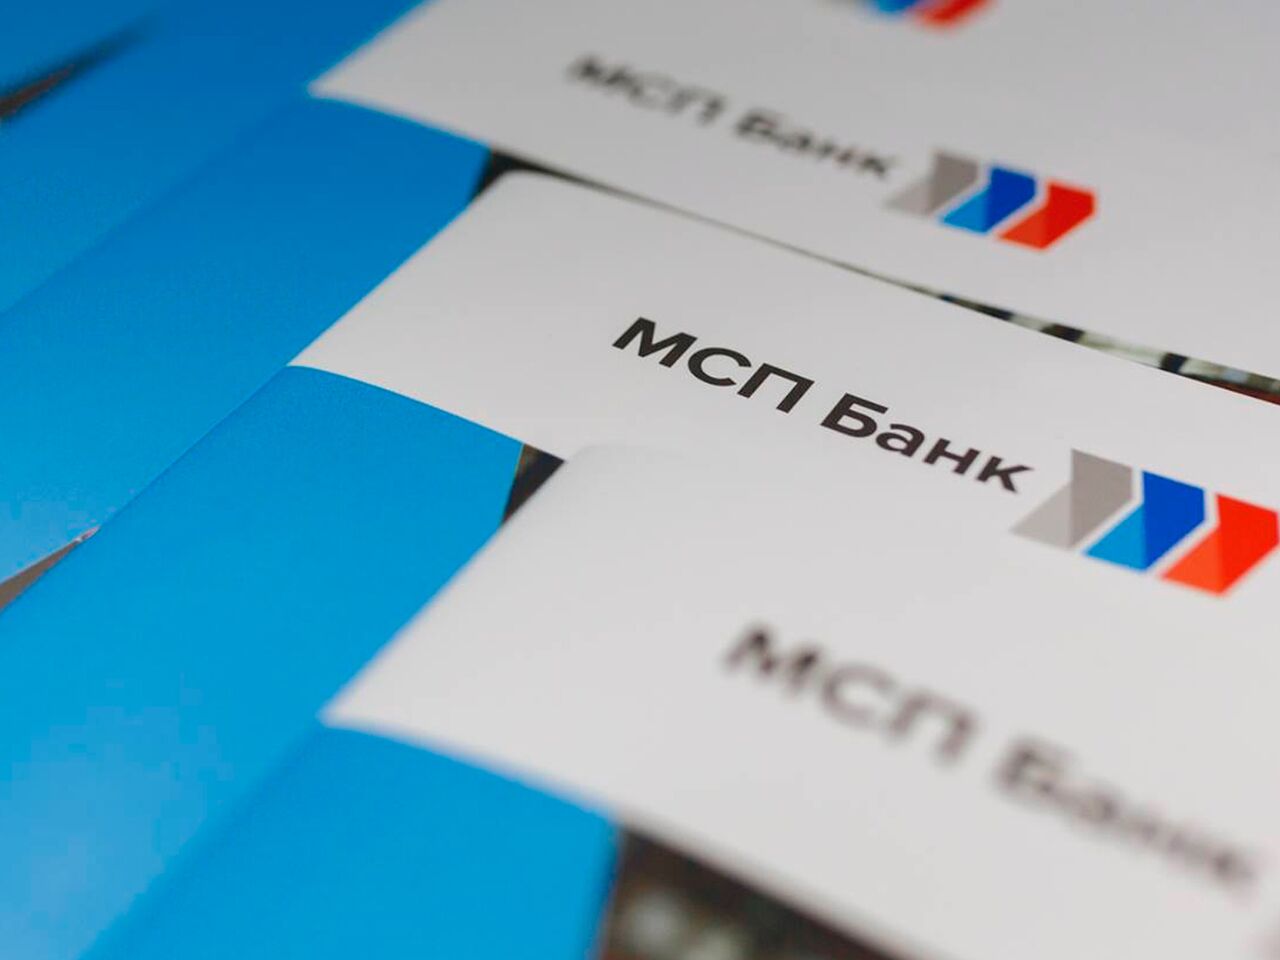 МСП Банк перезапустил льготную программу экспресс-кредитования бизнеса.